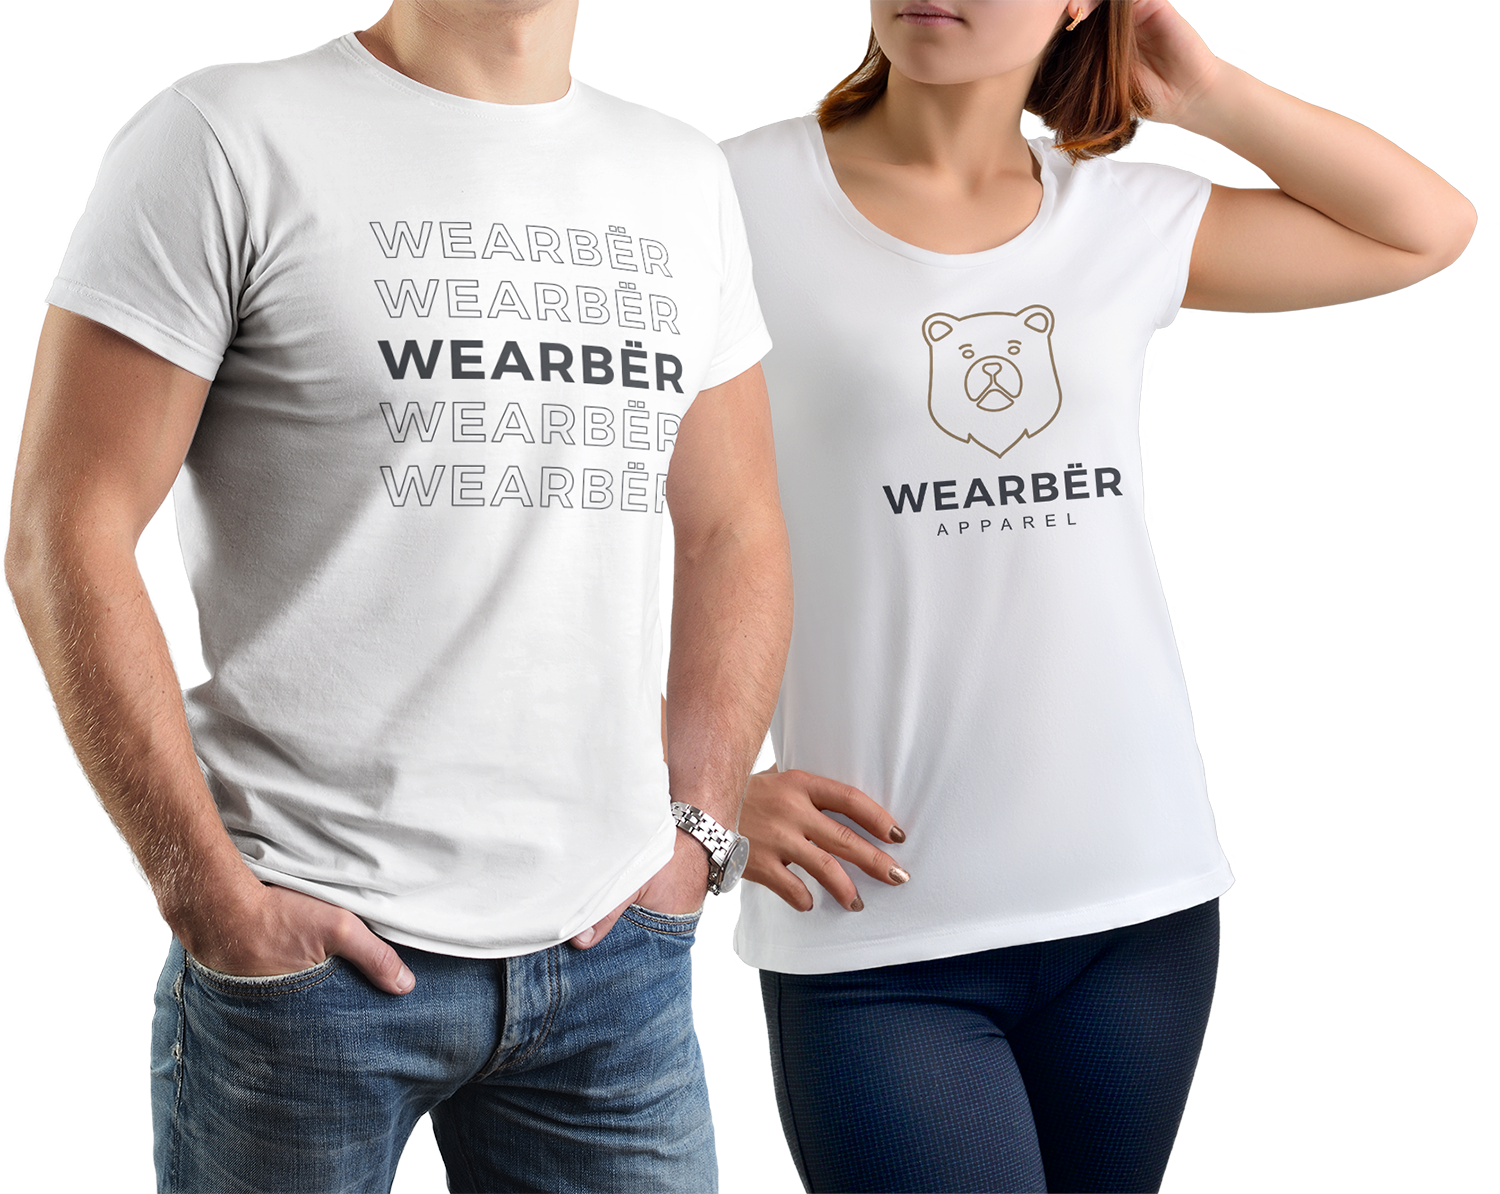 Wearber apparel